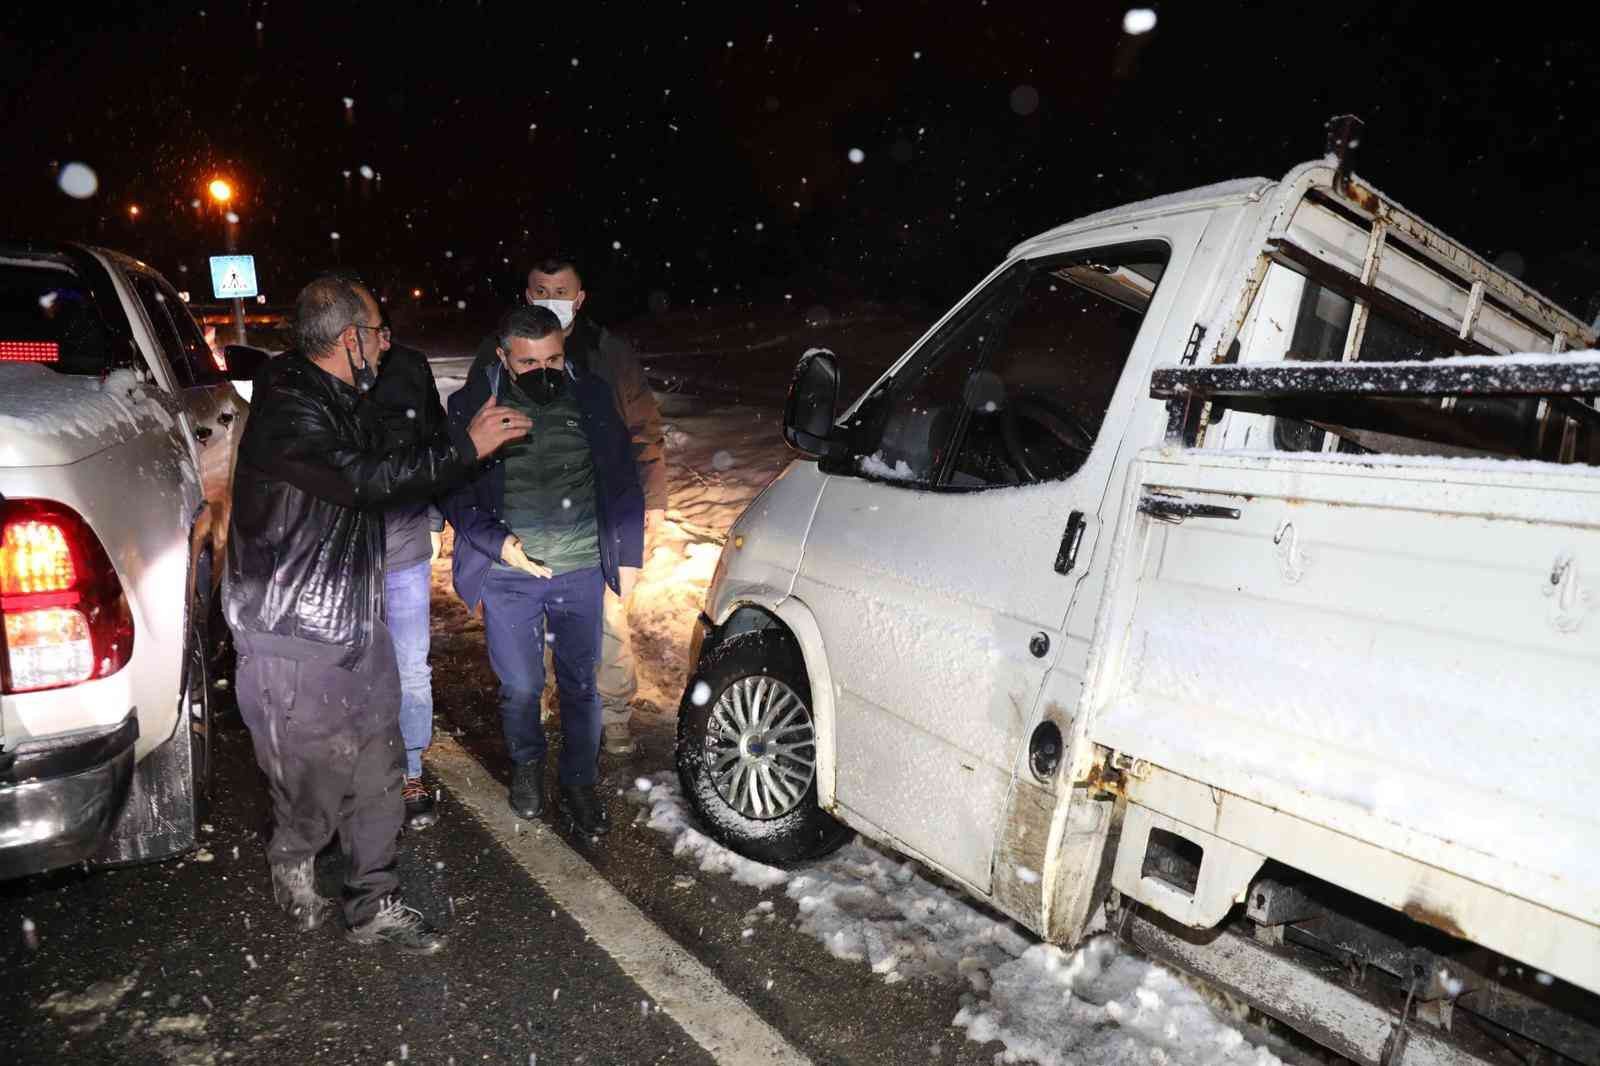 Bolu Dağı’nda kar yağışı başladı, Polis ekipleri teyakkuza geçti #duzce